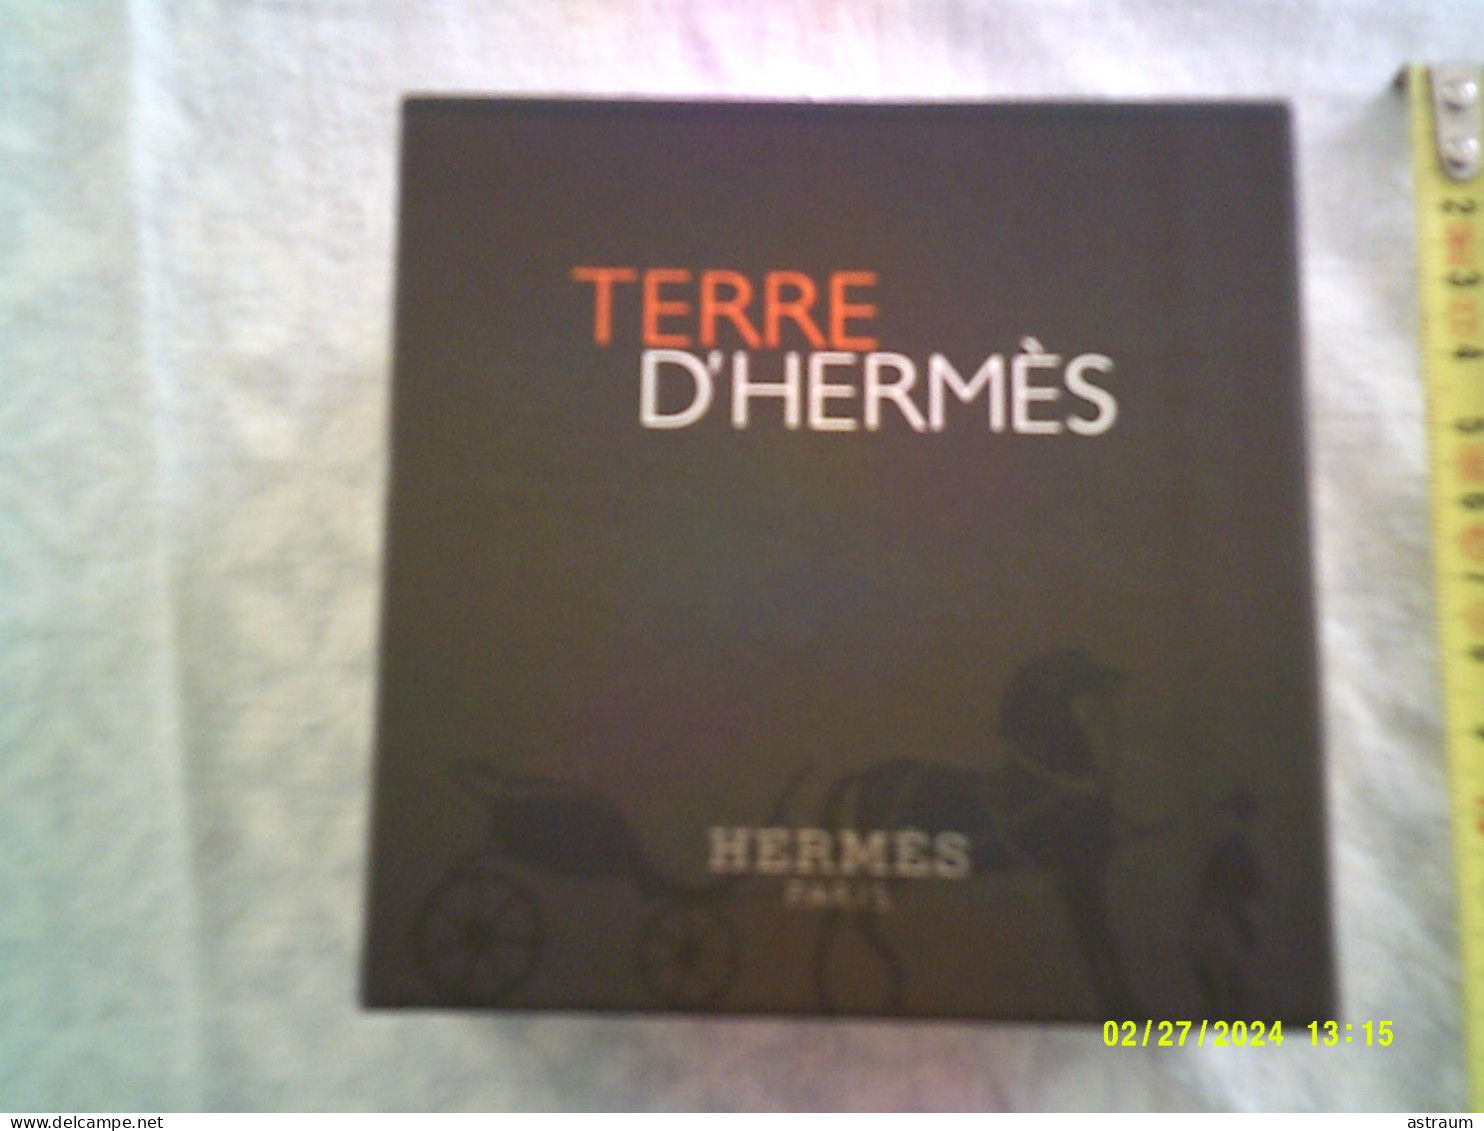 Coffret 2 Miniature Vaporisateur Parfum Hermes - EDT - Terre D'hermes Plein 12,5ml + Tube Emulsion Apres Rasage 15ml - Miniatures Men's Fragrances (in Box)